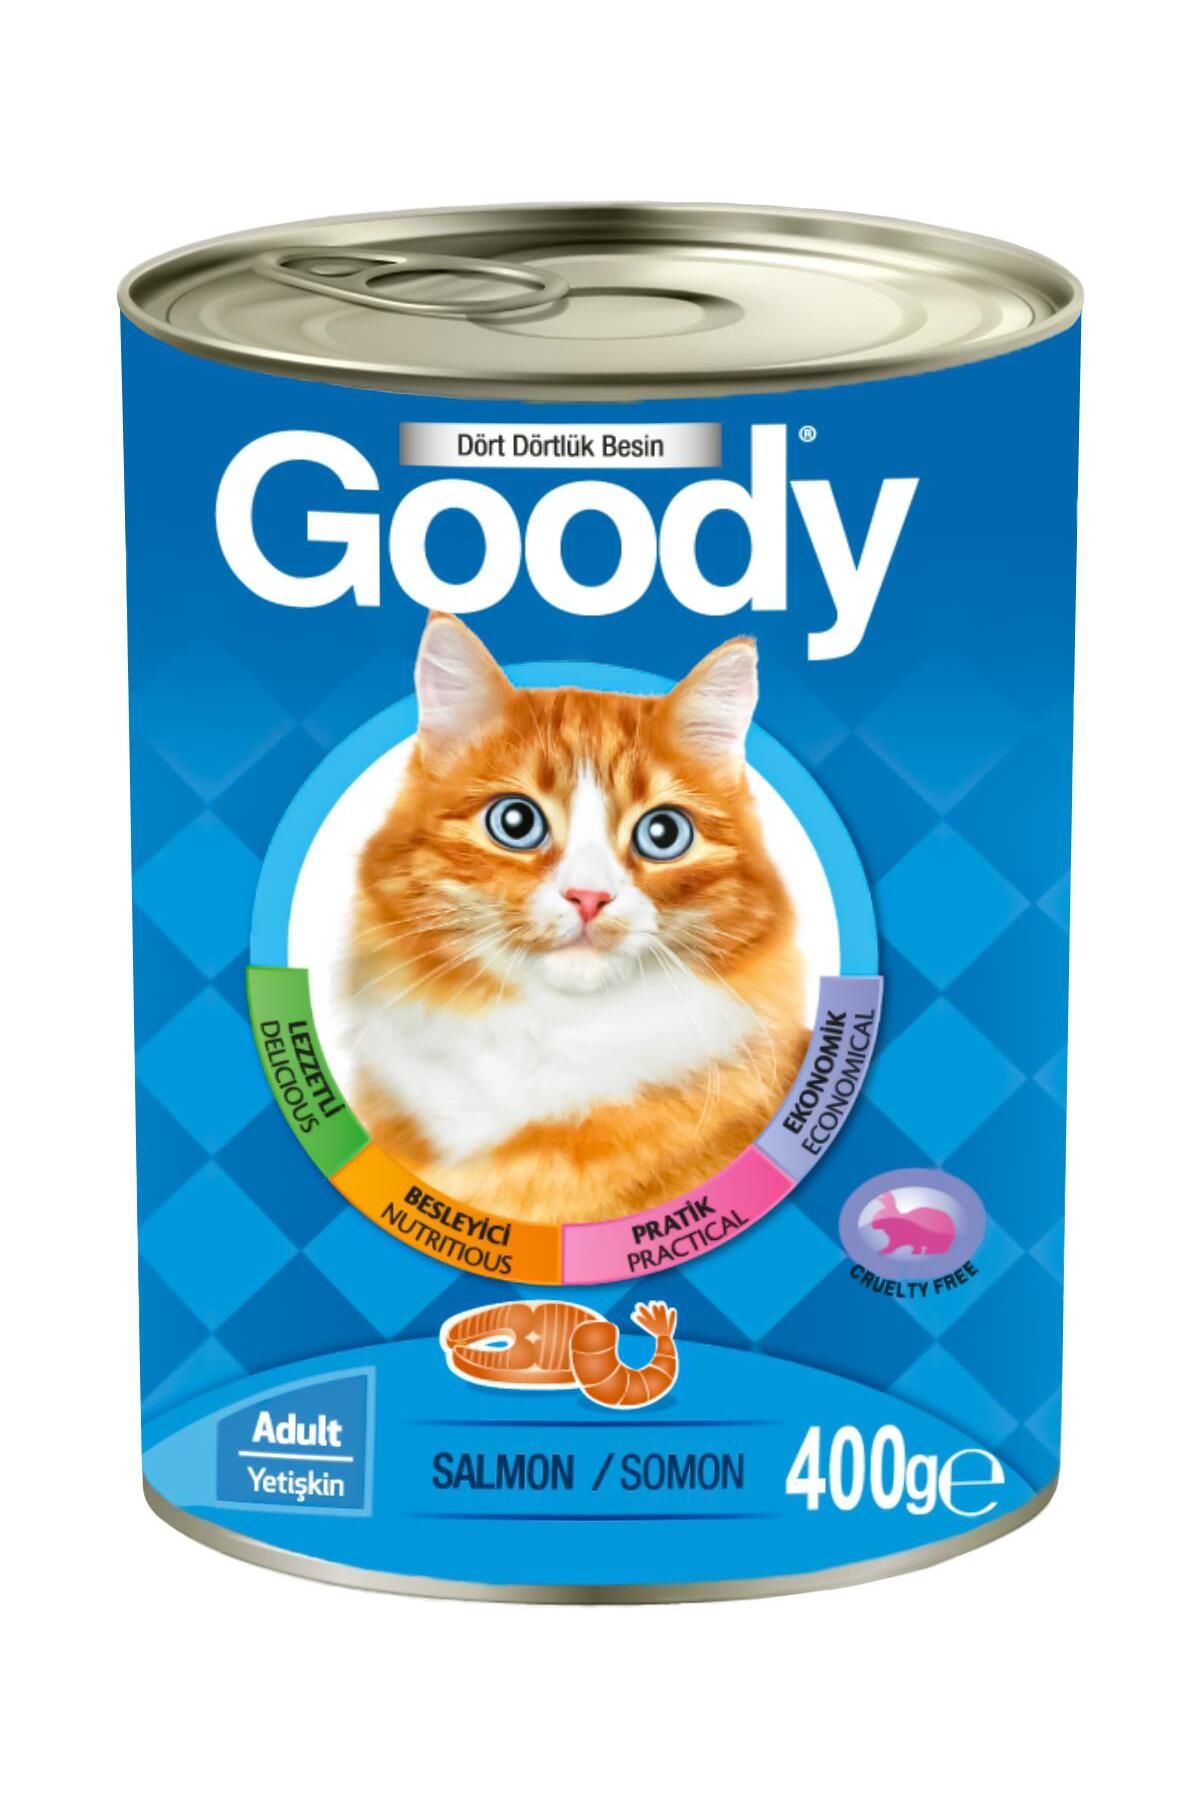 Goody Somonlu Yetişkin Kedi Konservesi 400 Gr